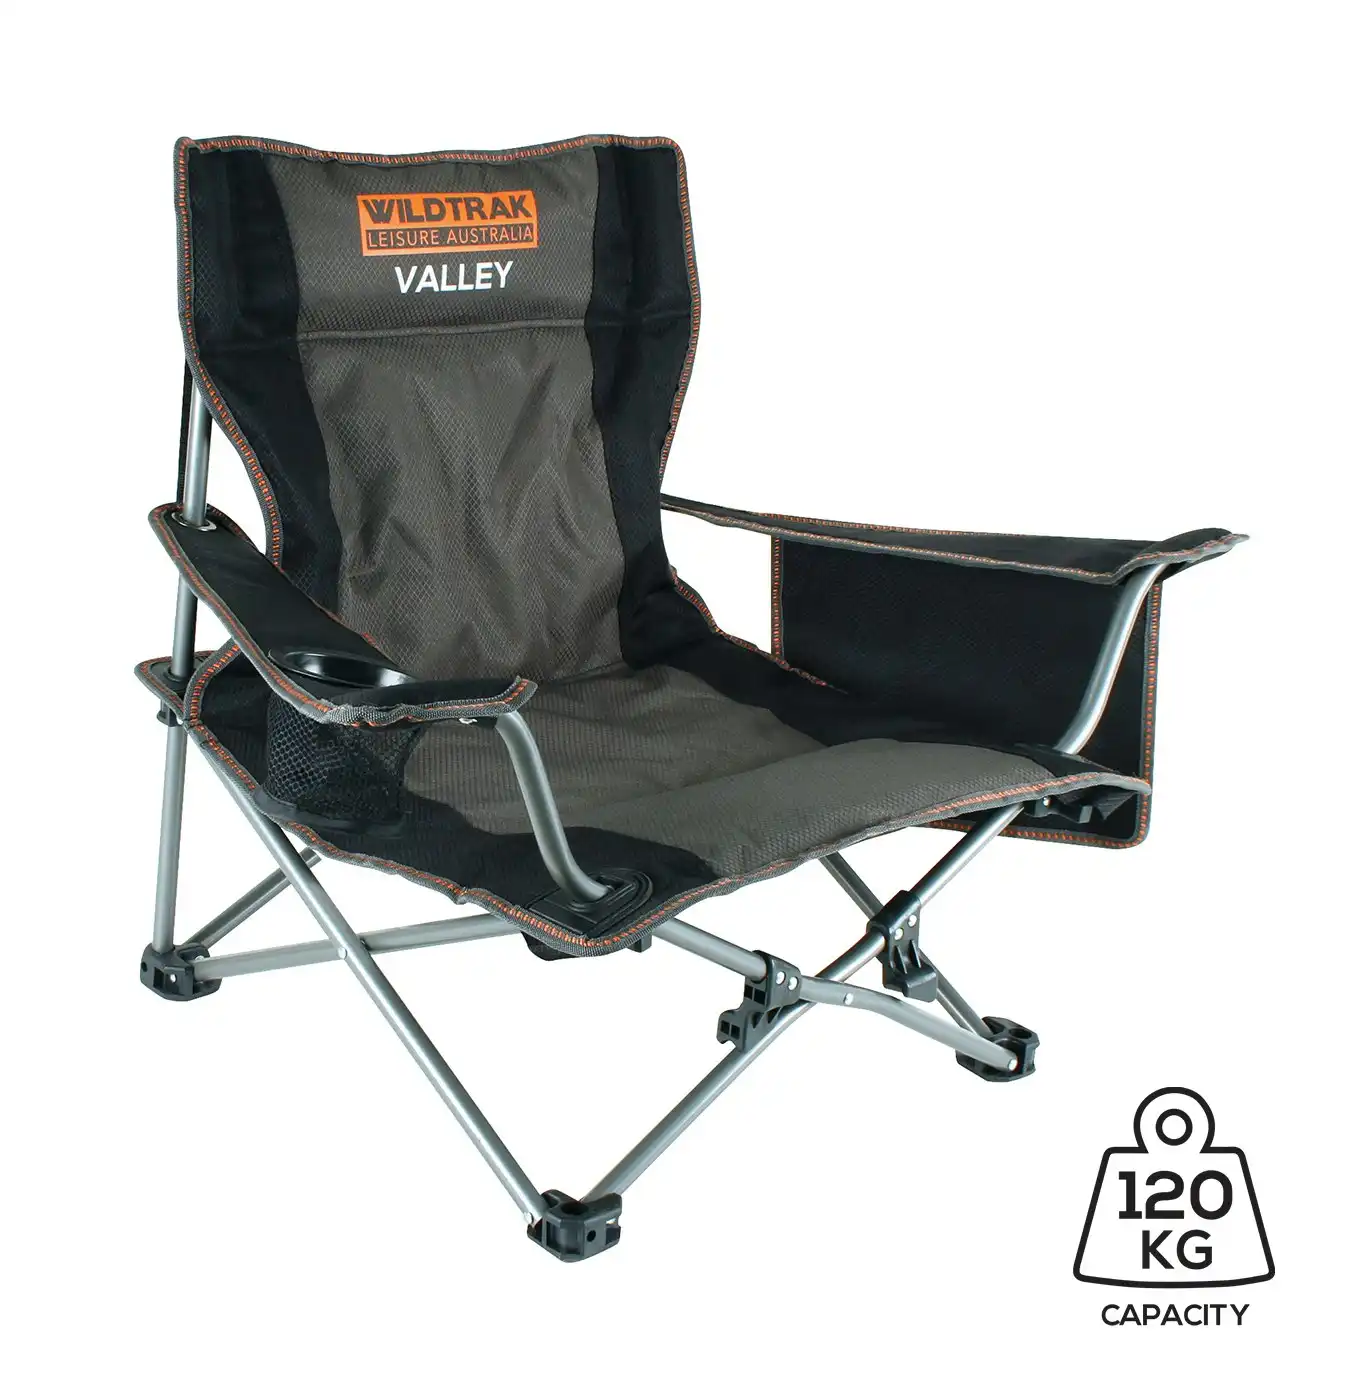 Wildtrak Valley 81x60cm Event Chair Outdoor Beach Seat w/ Cup Holder Grey/Black